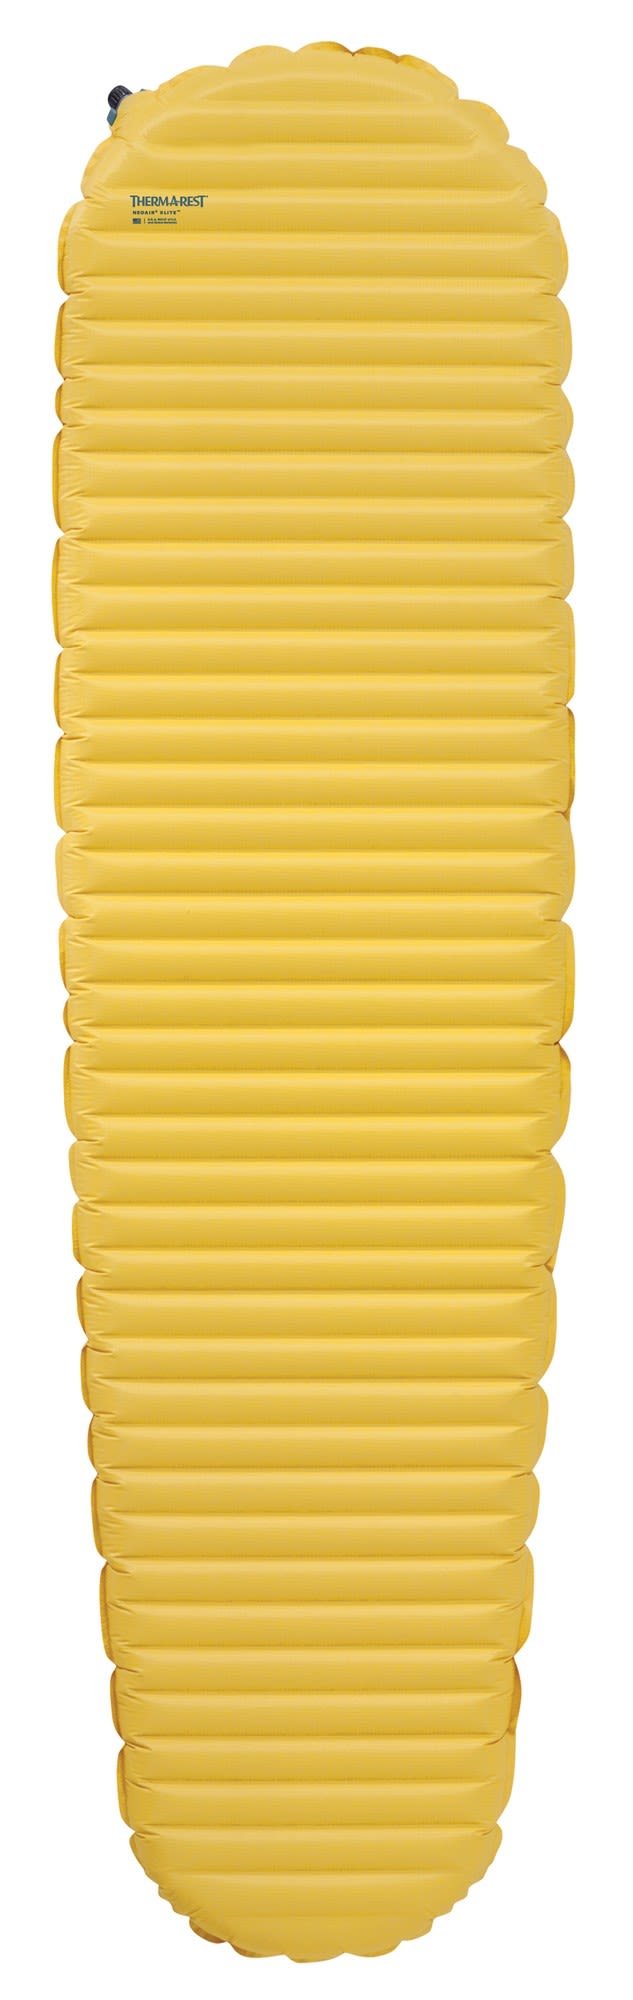 Therm-a-Rest Neoair Xlite Small Gelb- Daunen Thermo-Luftmatratzen- Grösse 119 cm - Farbe Lemon Curry